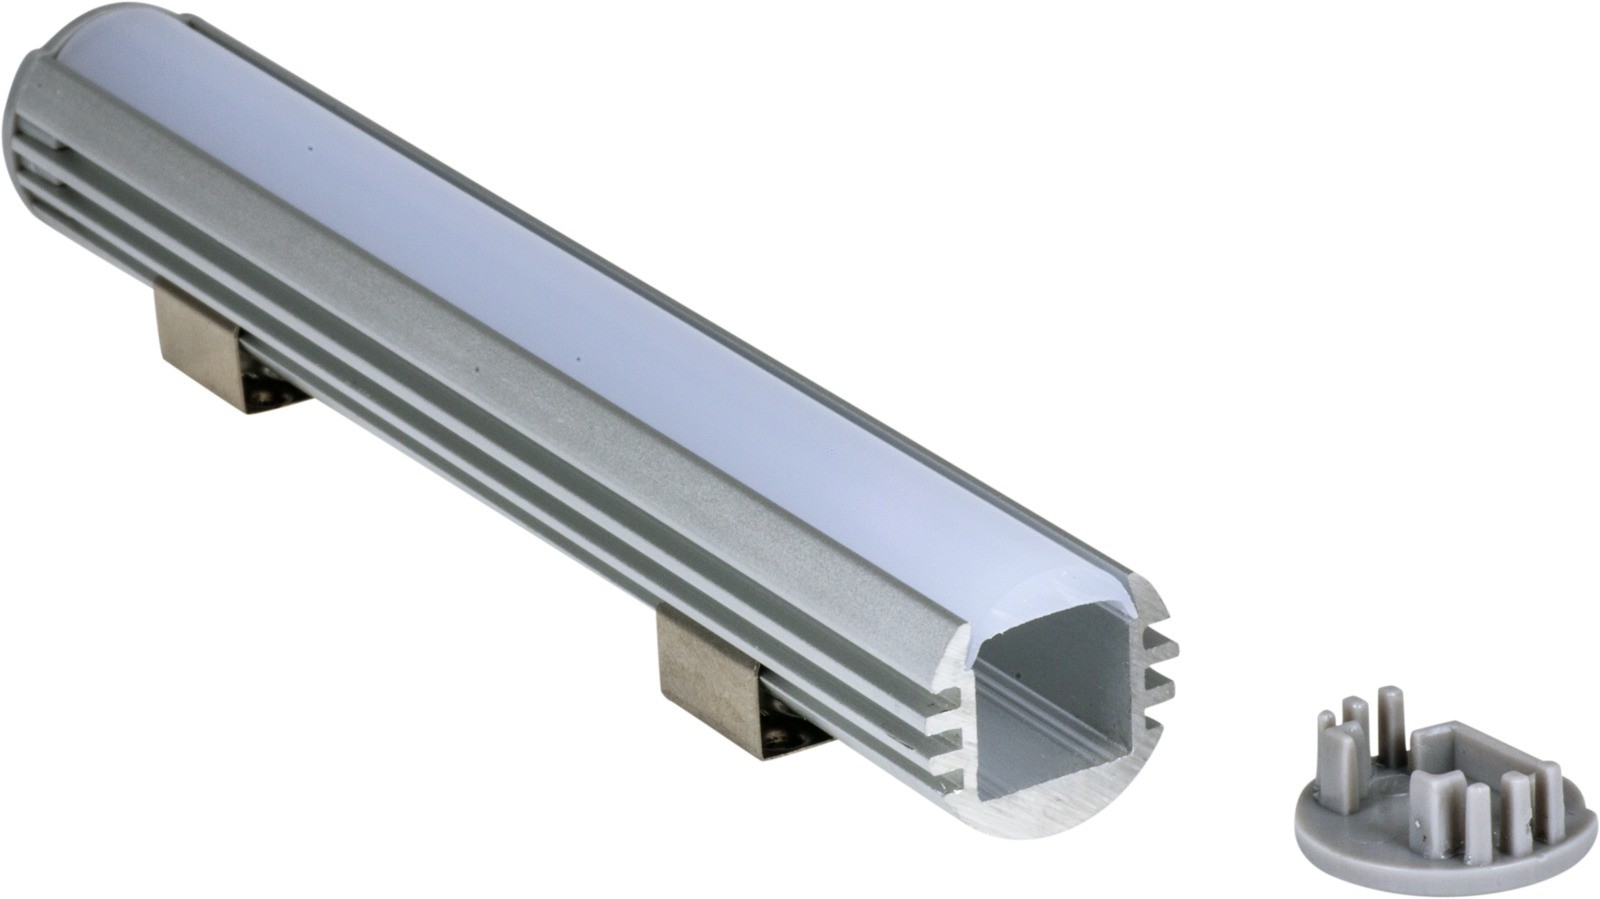 LED Aluminium rund-Profil 1m inklusive Abdeckung und Befestigung